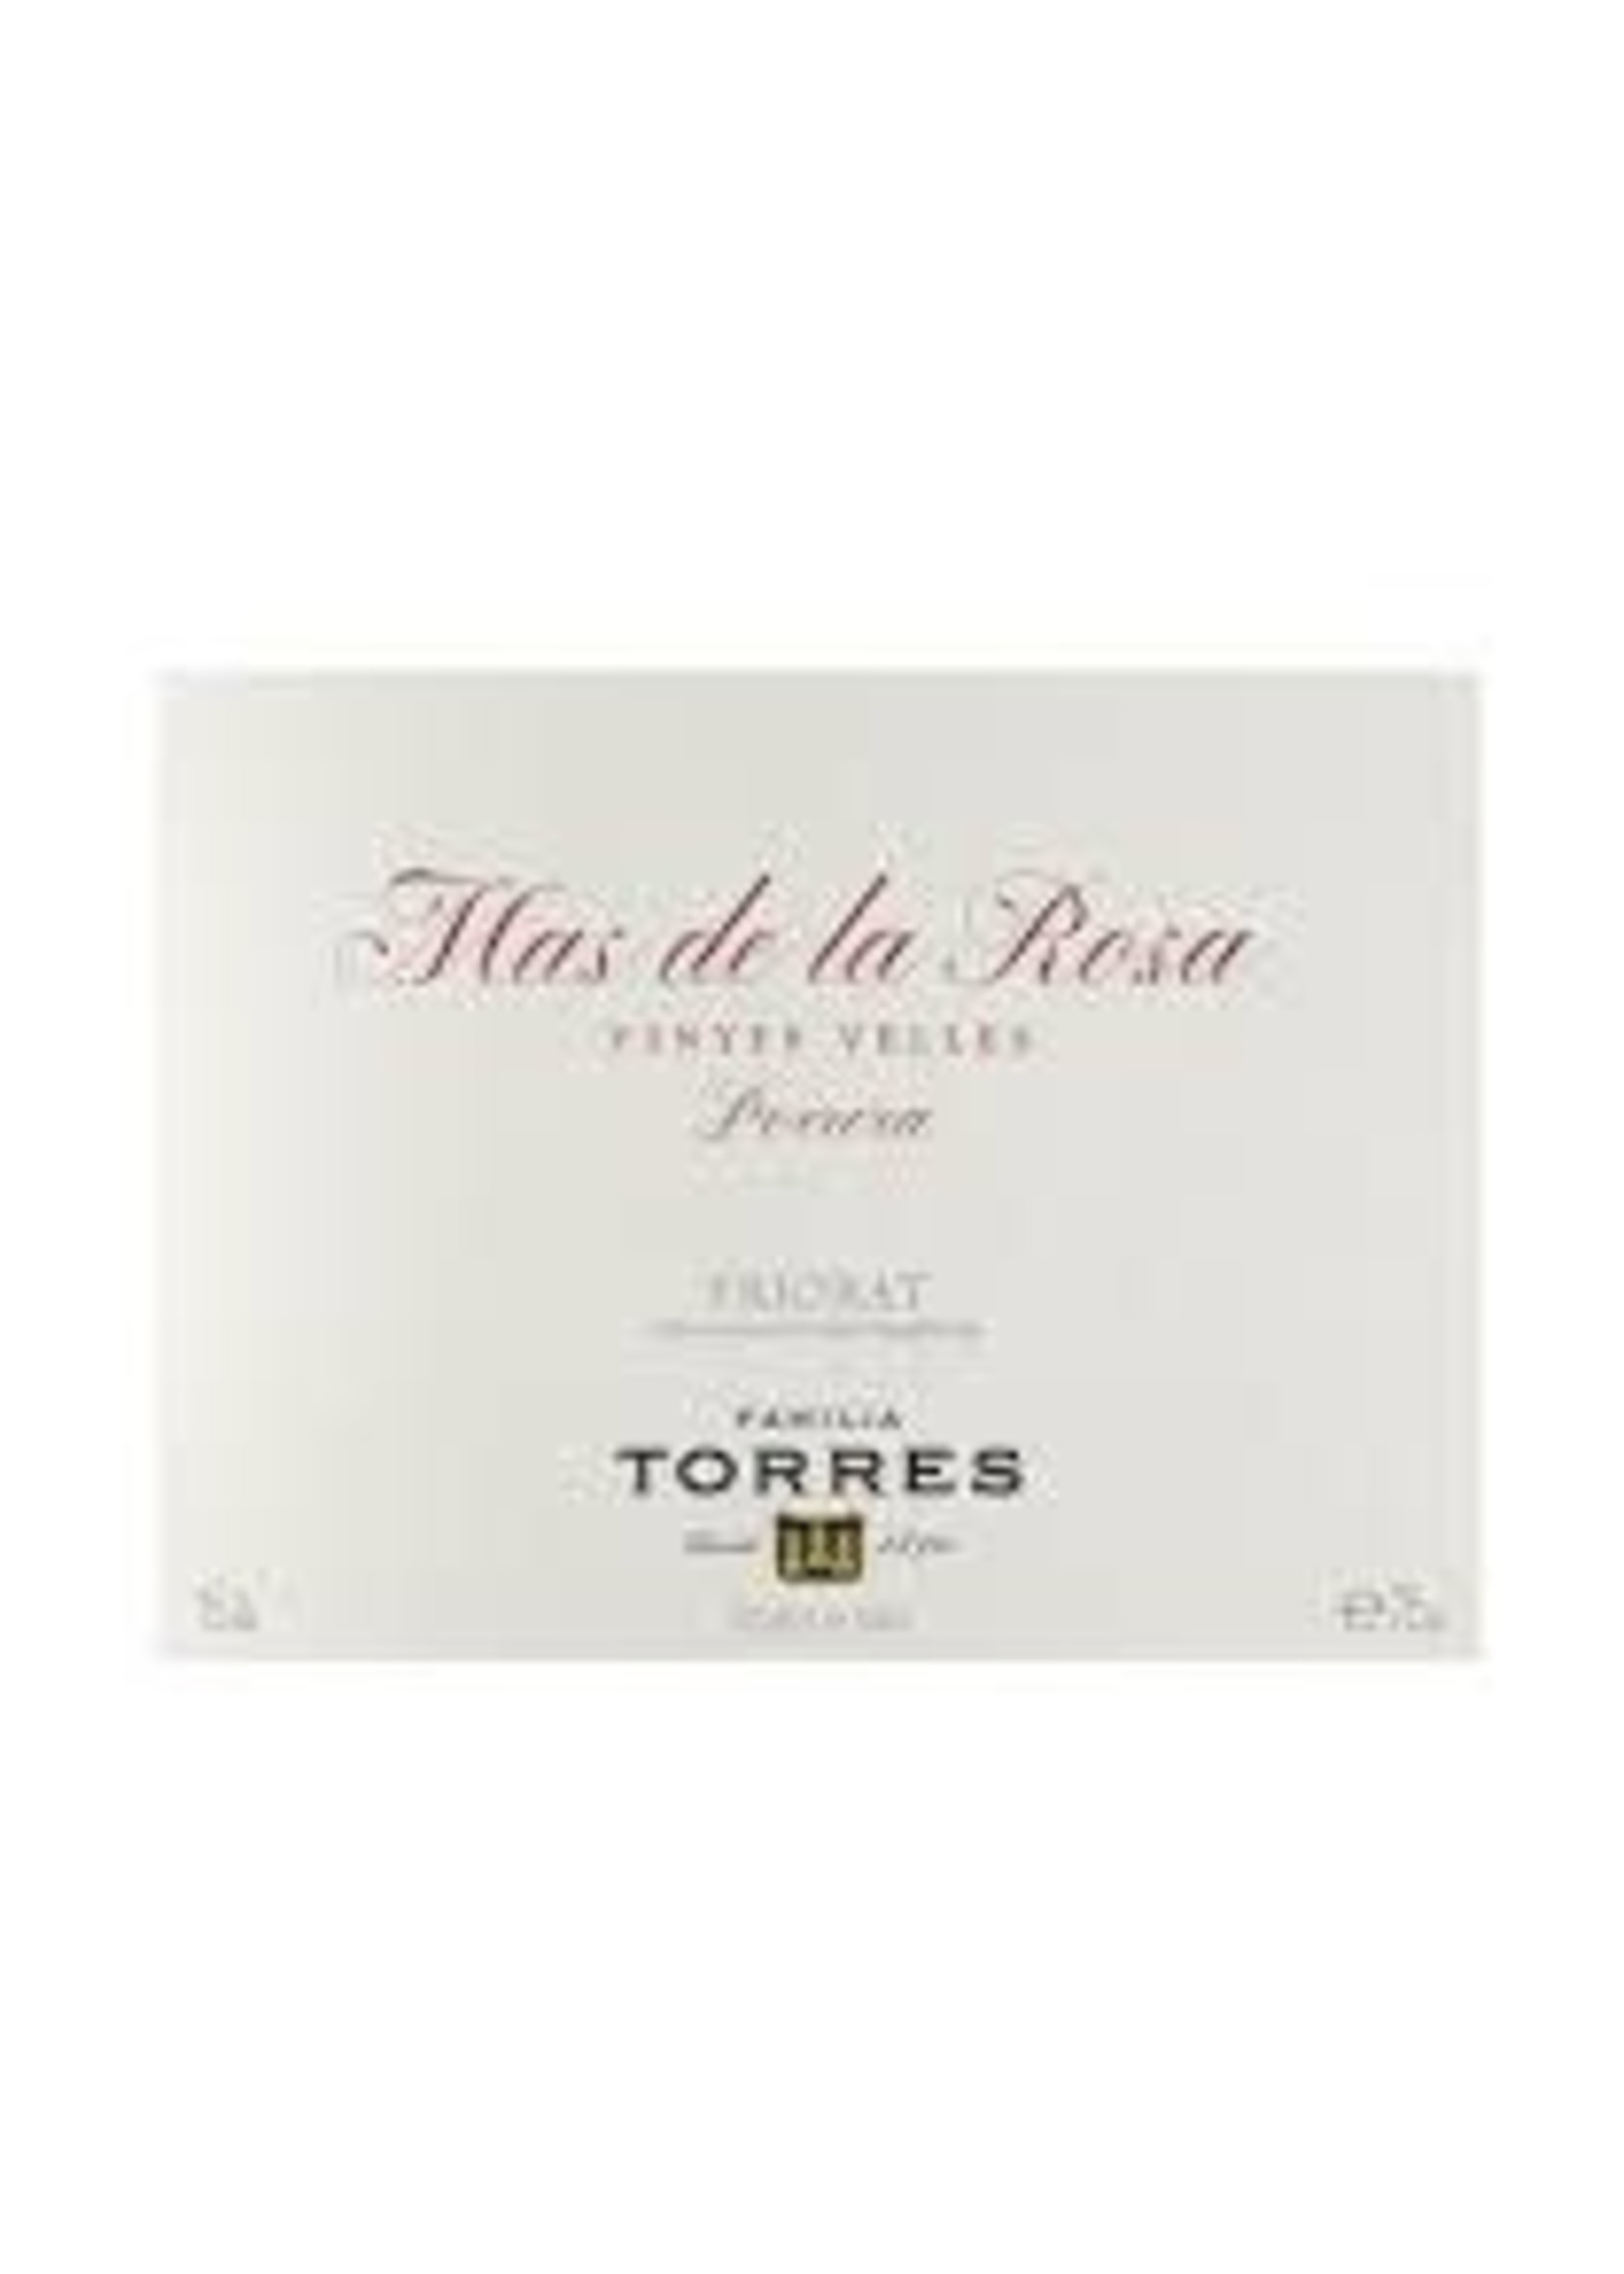 Torres 2017 Priorat 'Mas de la Rosa' Vinyes Velles 750ml